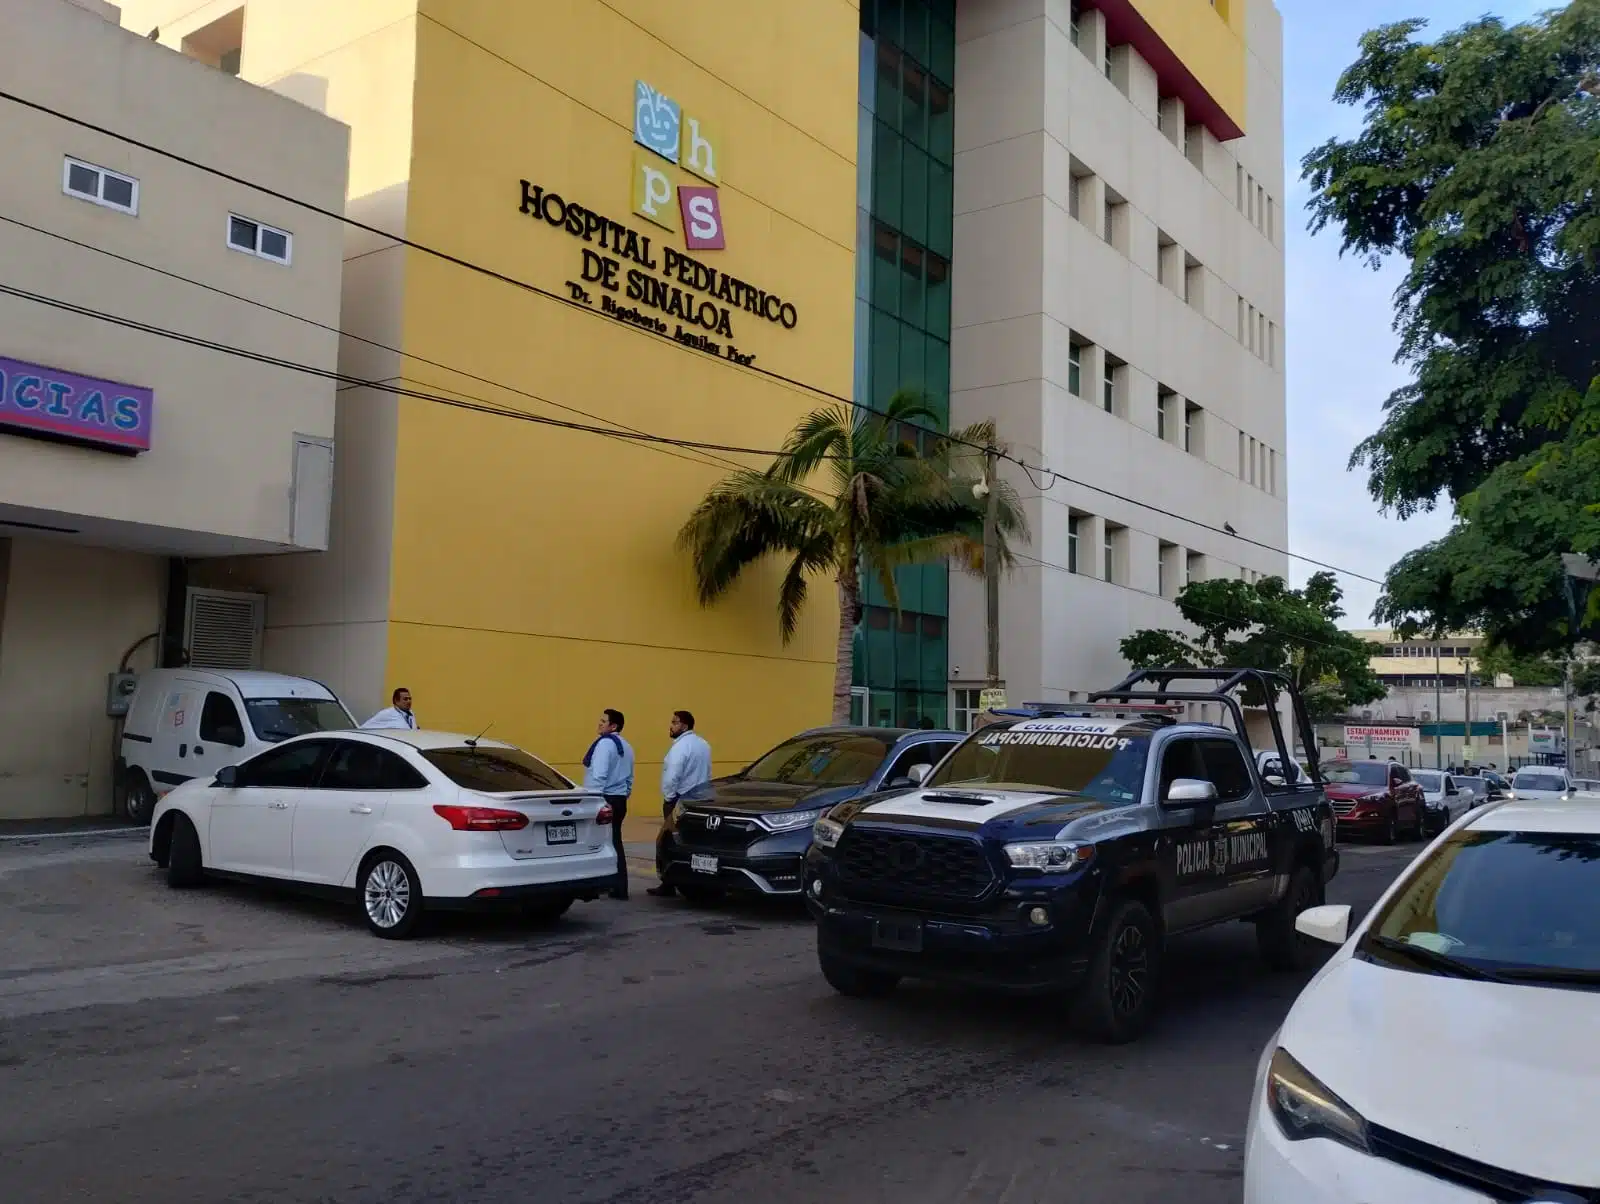 Hospital Pediátrico de Culiacán